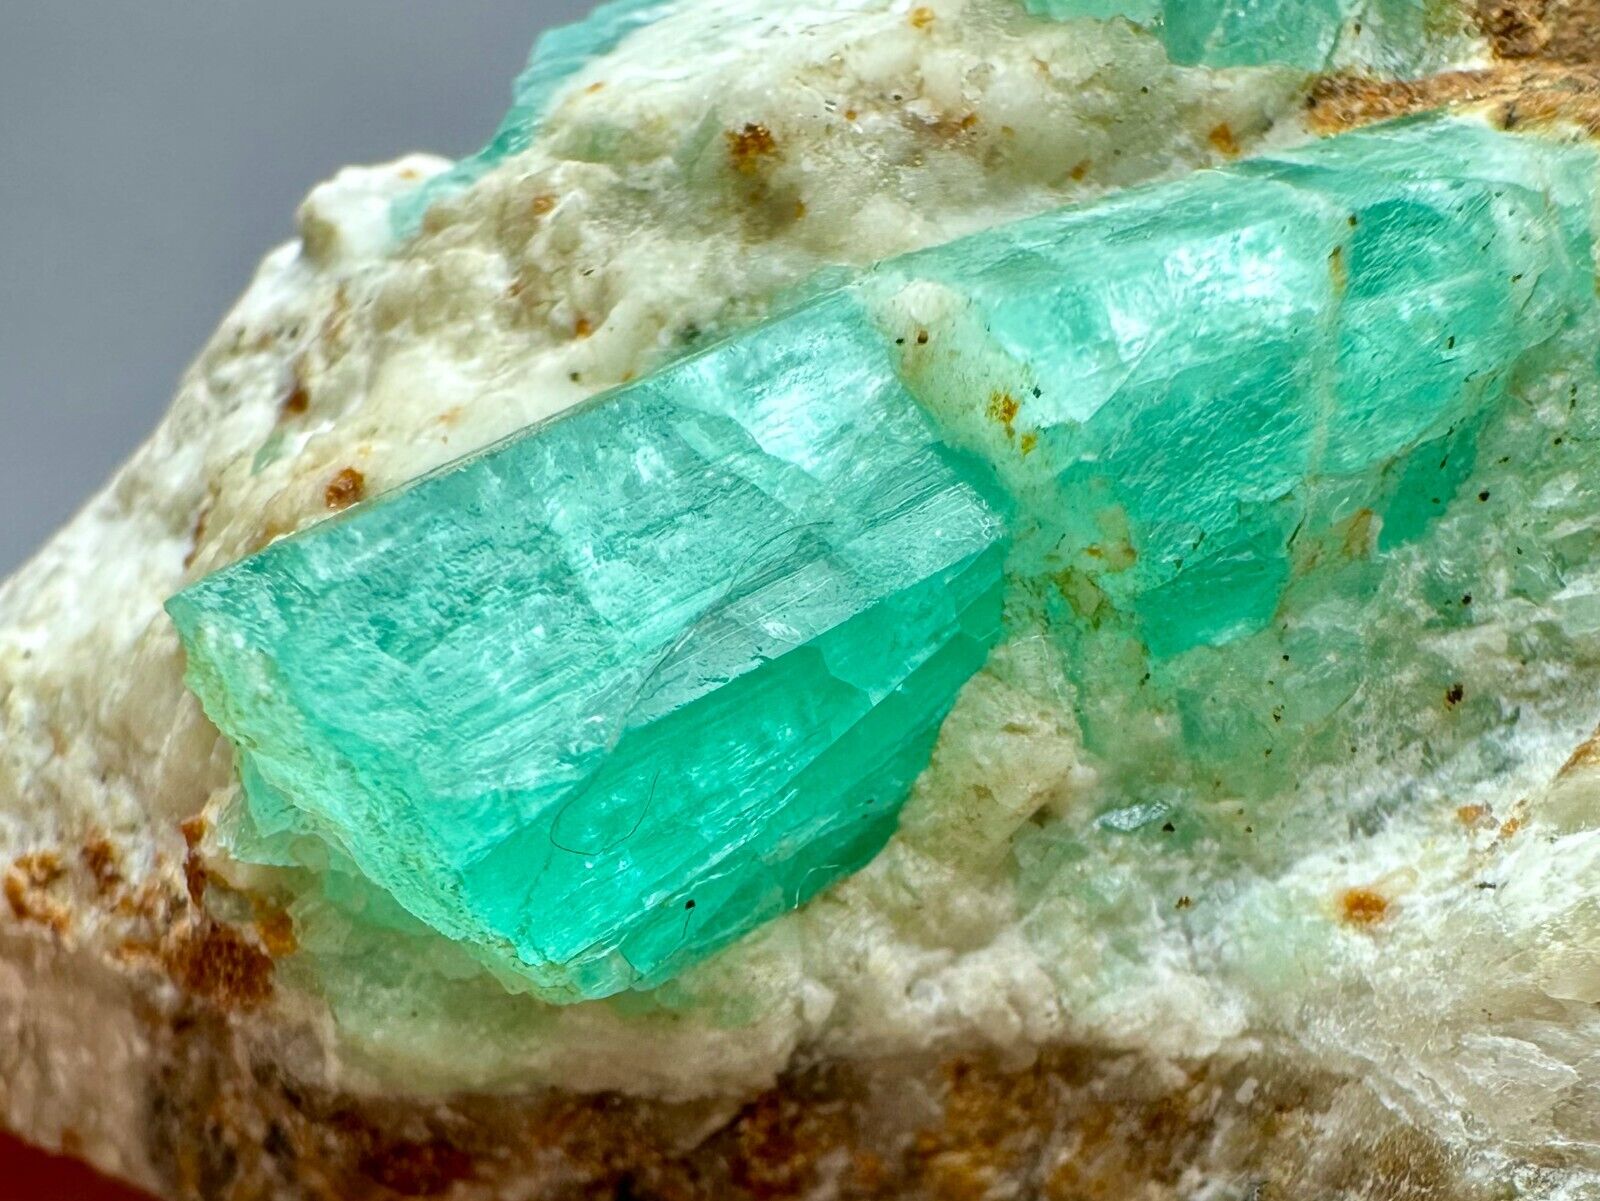 398 Ct Transparent Amazing Top Panjshir Green Emerald Crystals On Matrix @AFG